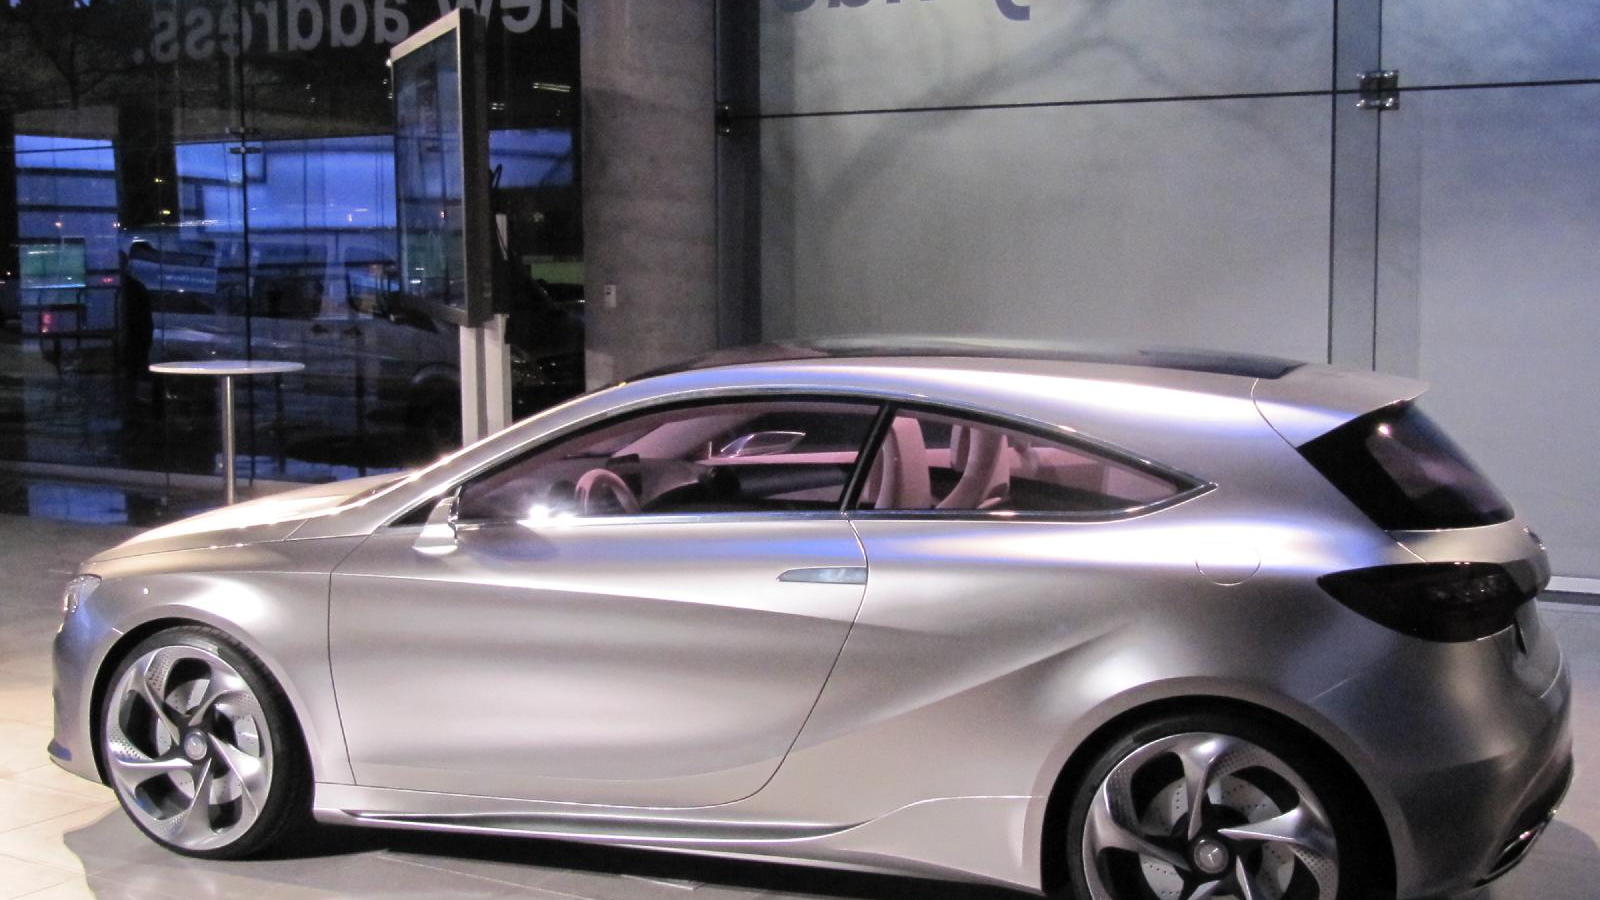 Mercedes-Benz Concept A-Class, at new Mercedes-Benz Manhattan showroom, April 2011